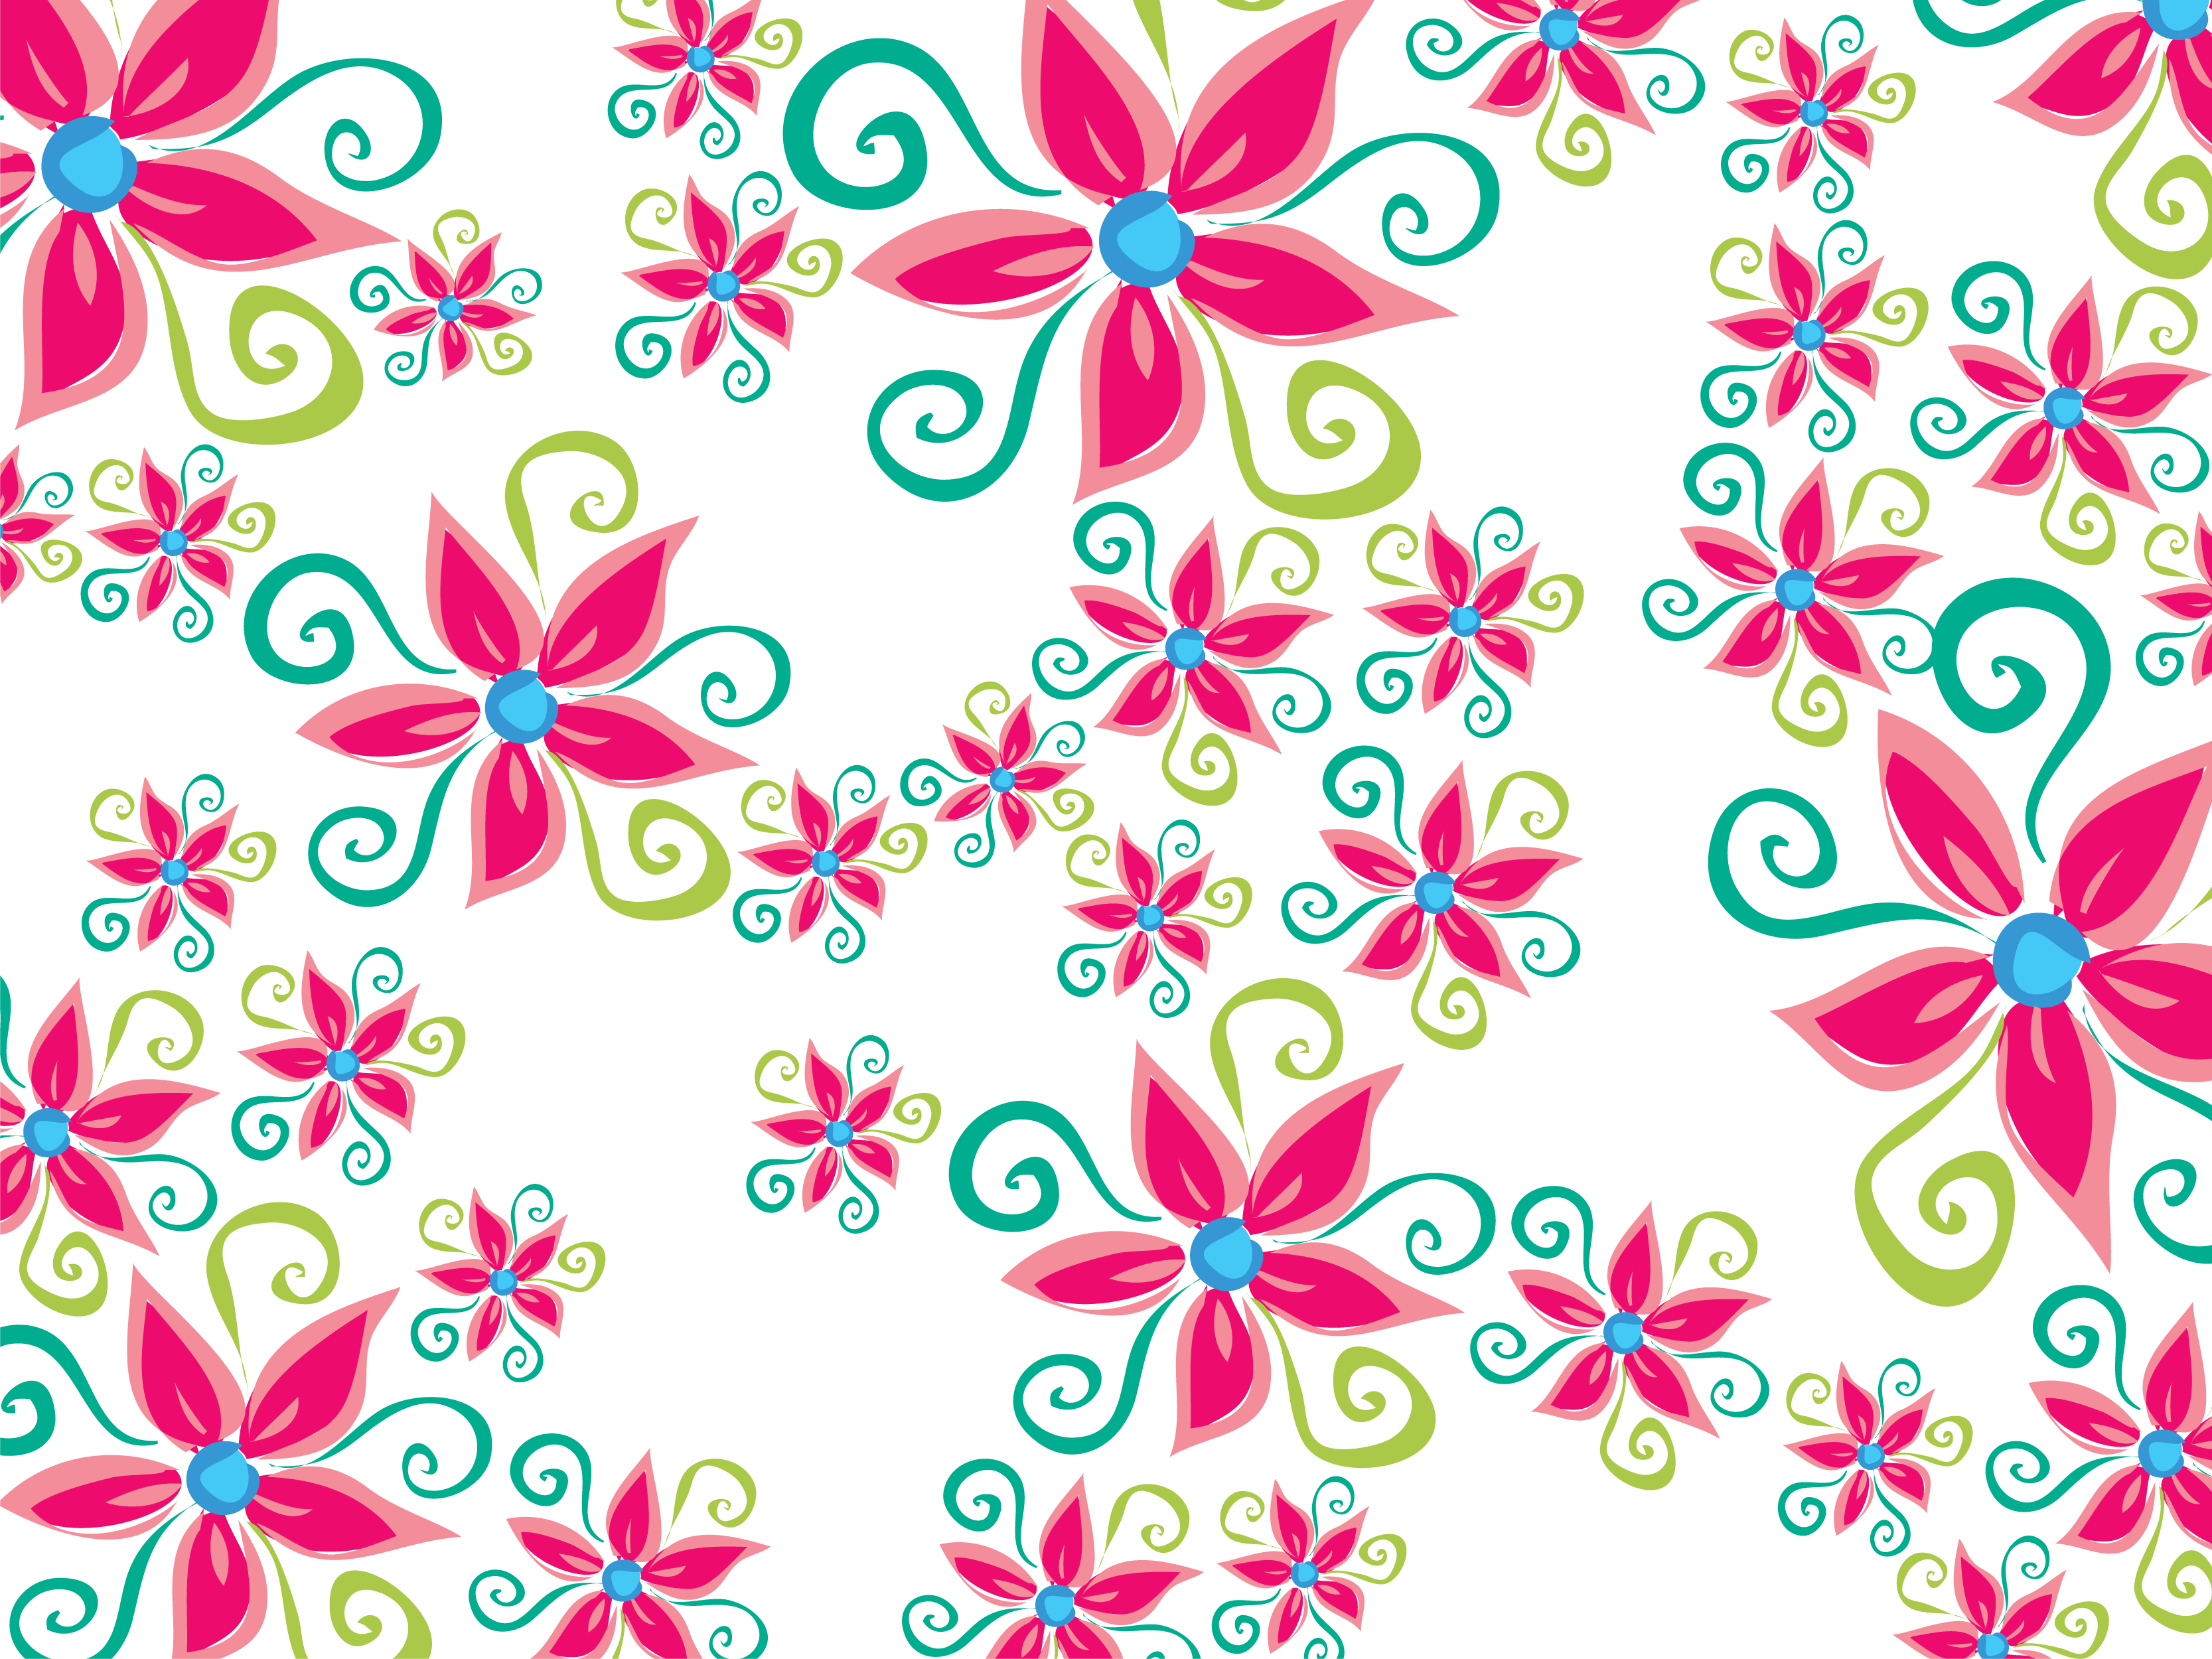 壁紙 背景イラスト 花の模様 柄 パターン No 002 手書き風 渦巻き